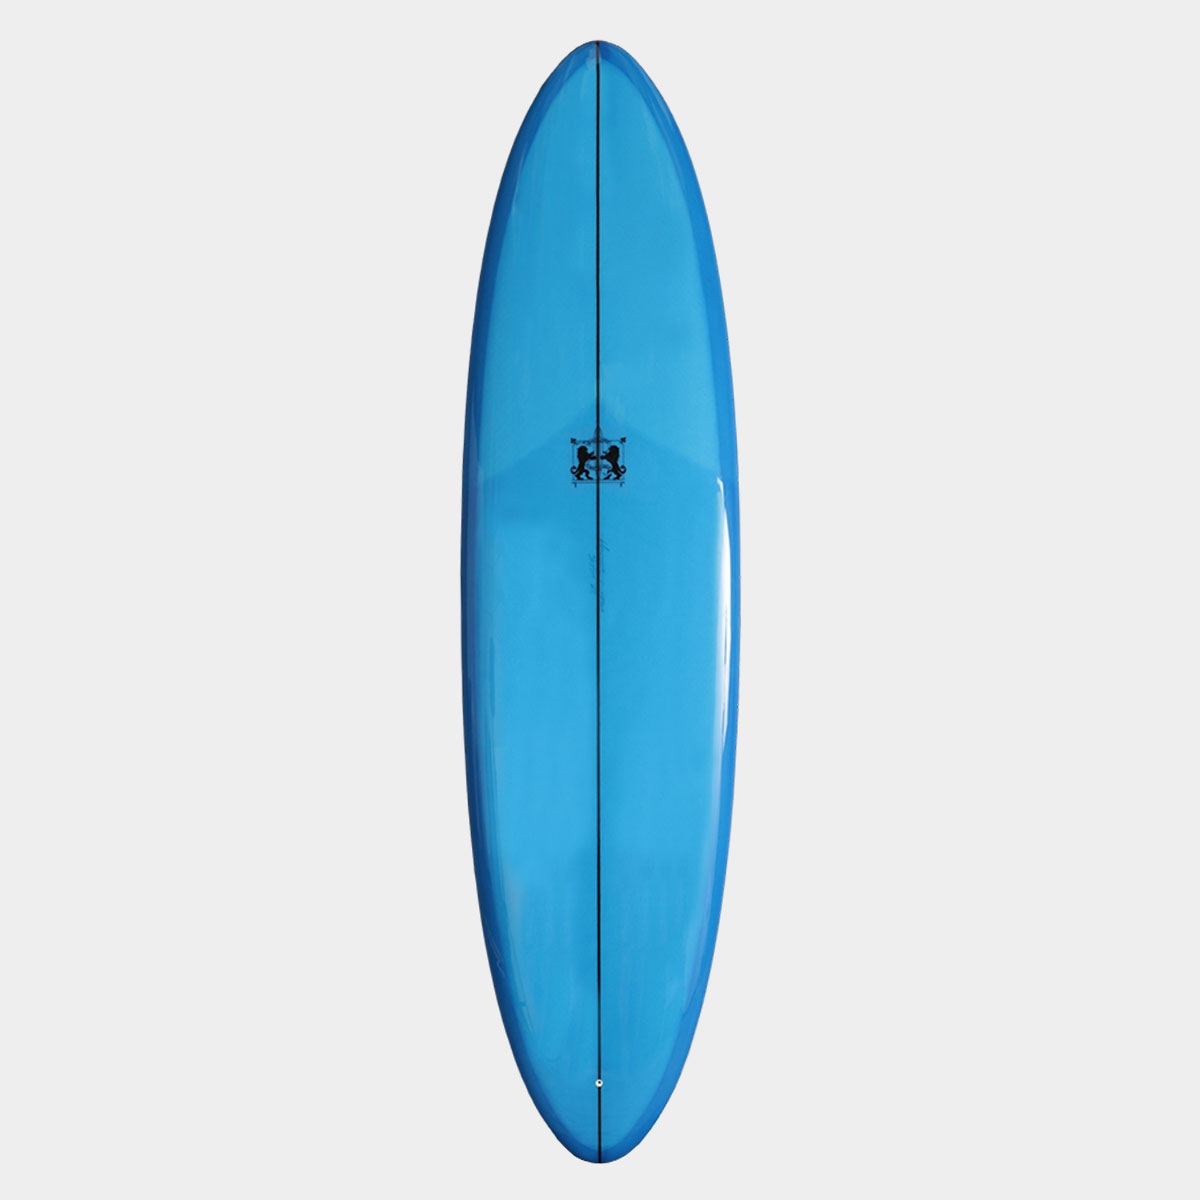 ラリーメイビル サーフボード エッグステイシー 7.2 ミッド サーフィン ミッドレングス シングルスタビ surfboards LARRY MABILE EGGSTACY 7'2 BLUE ブルー【jk2308】